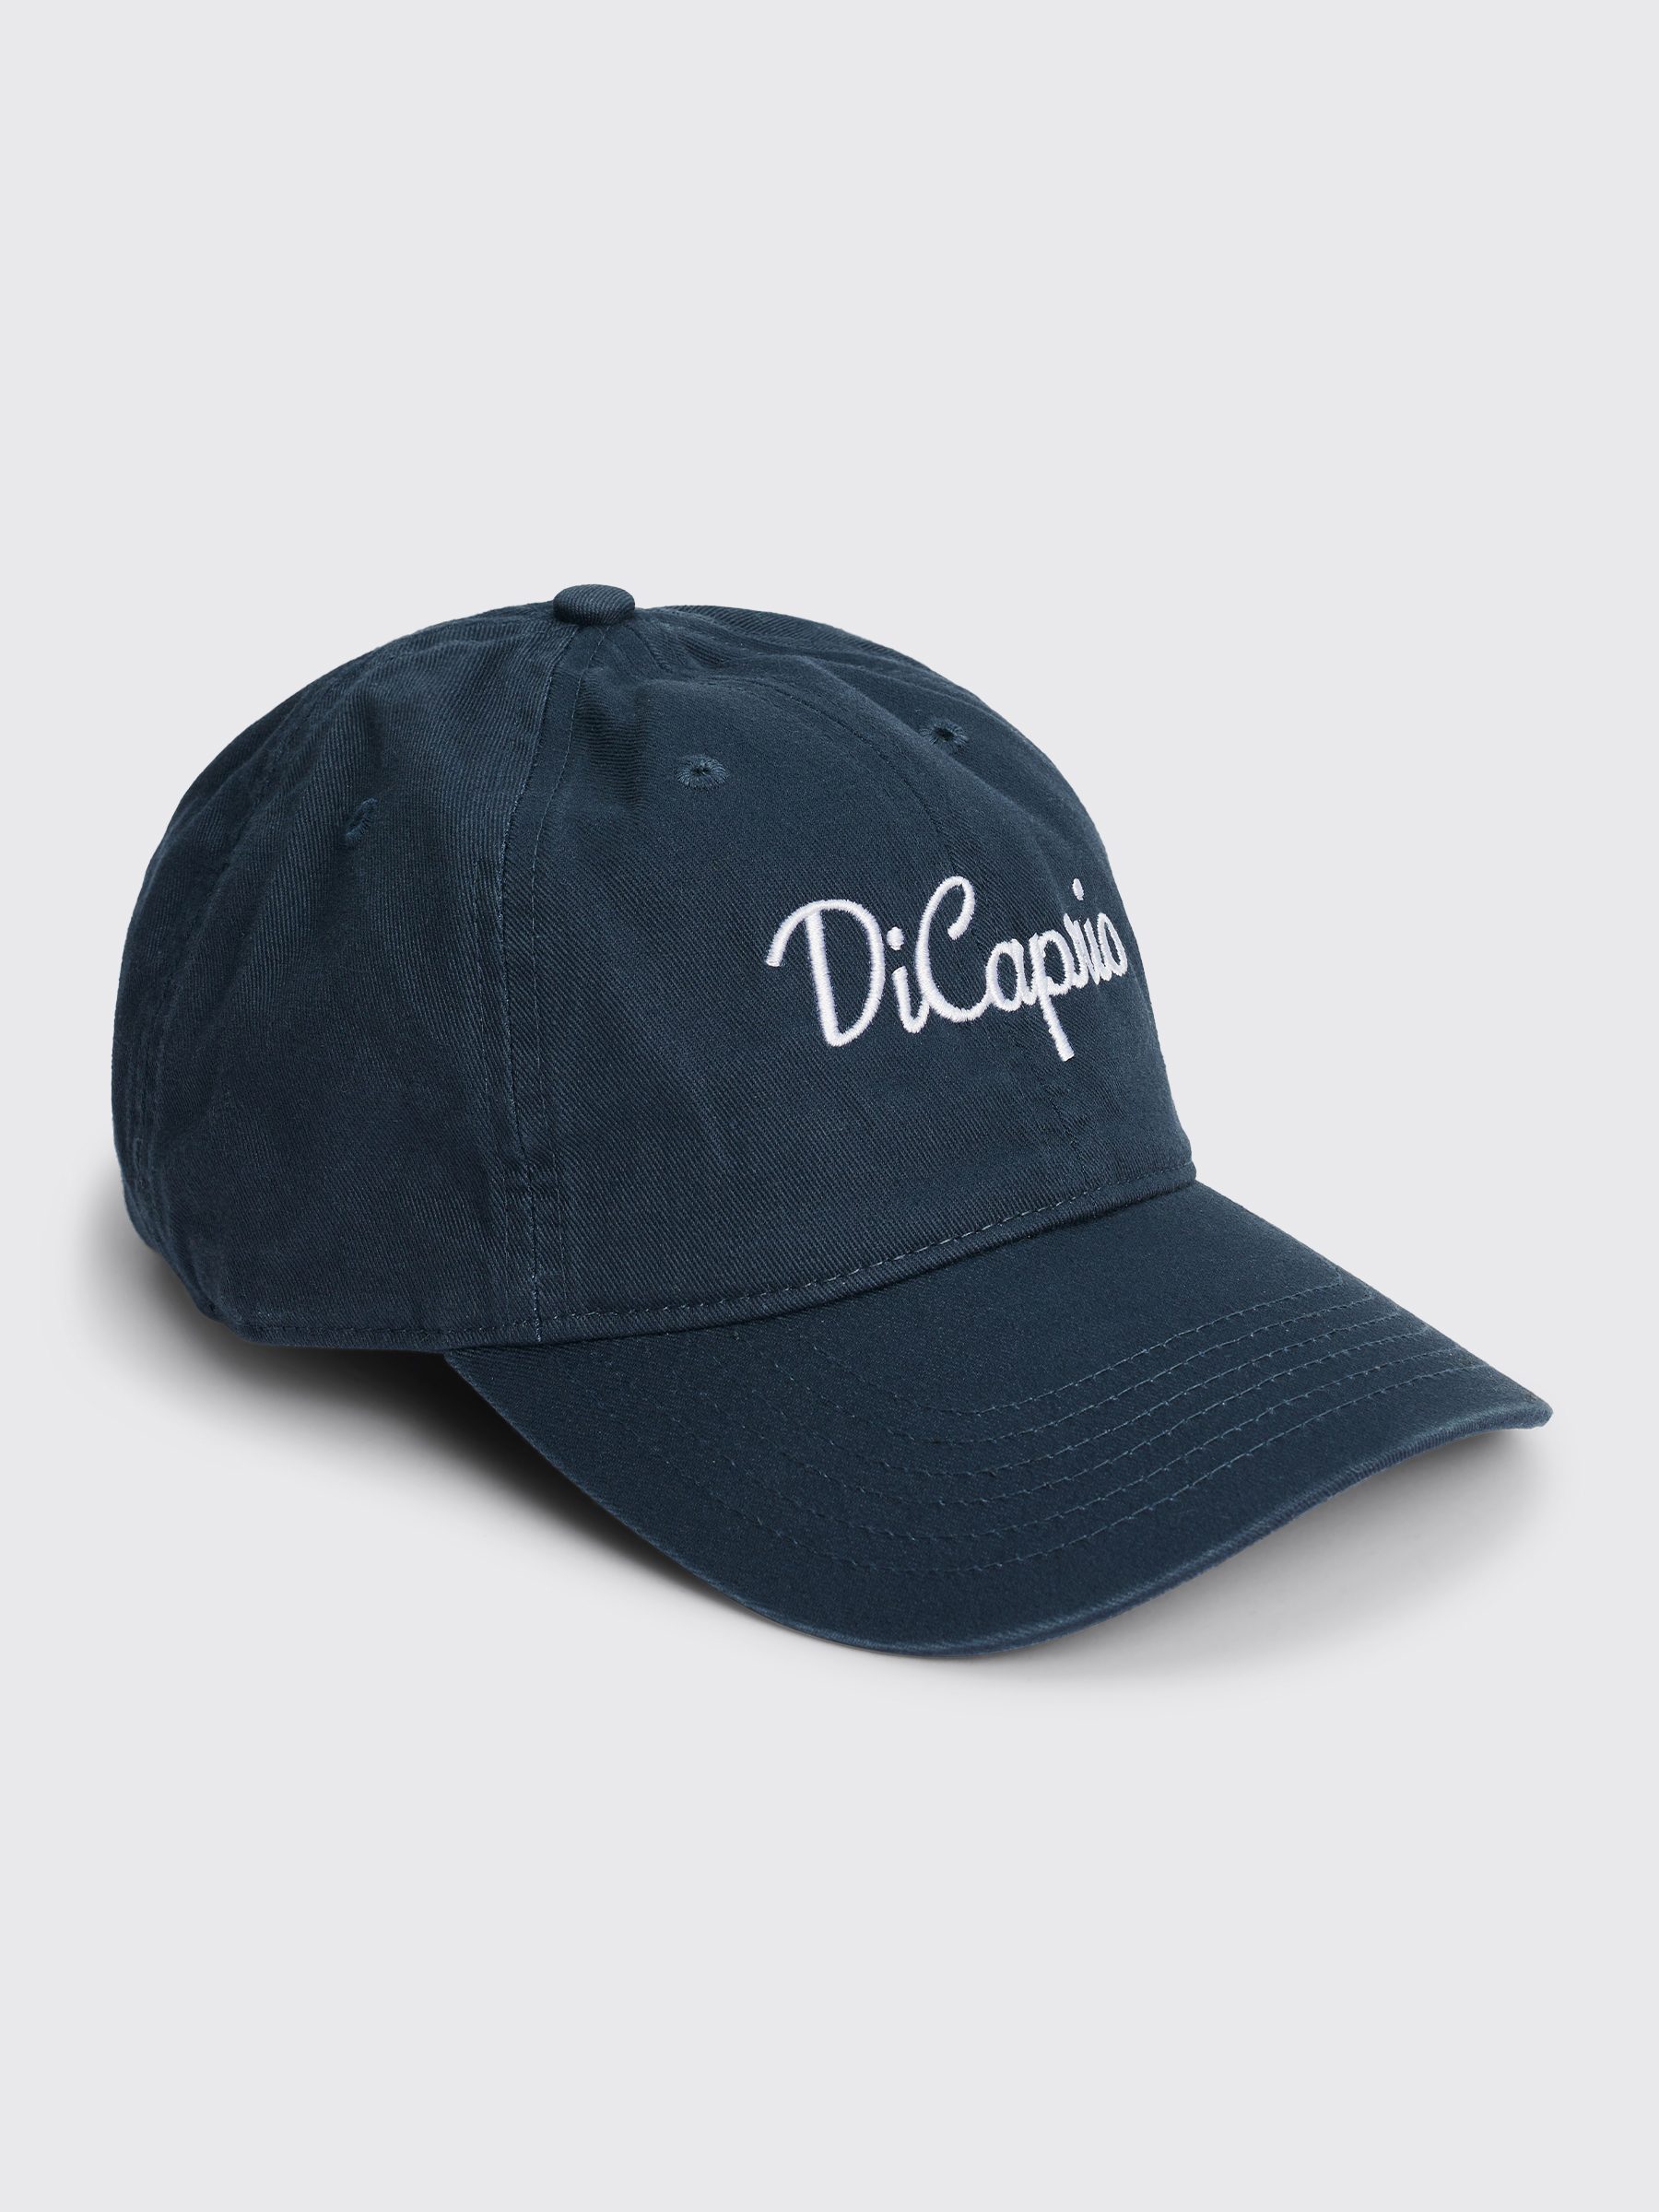 IDEA BOOKS キャップ Dicaprio ディカプリオ - 帽子